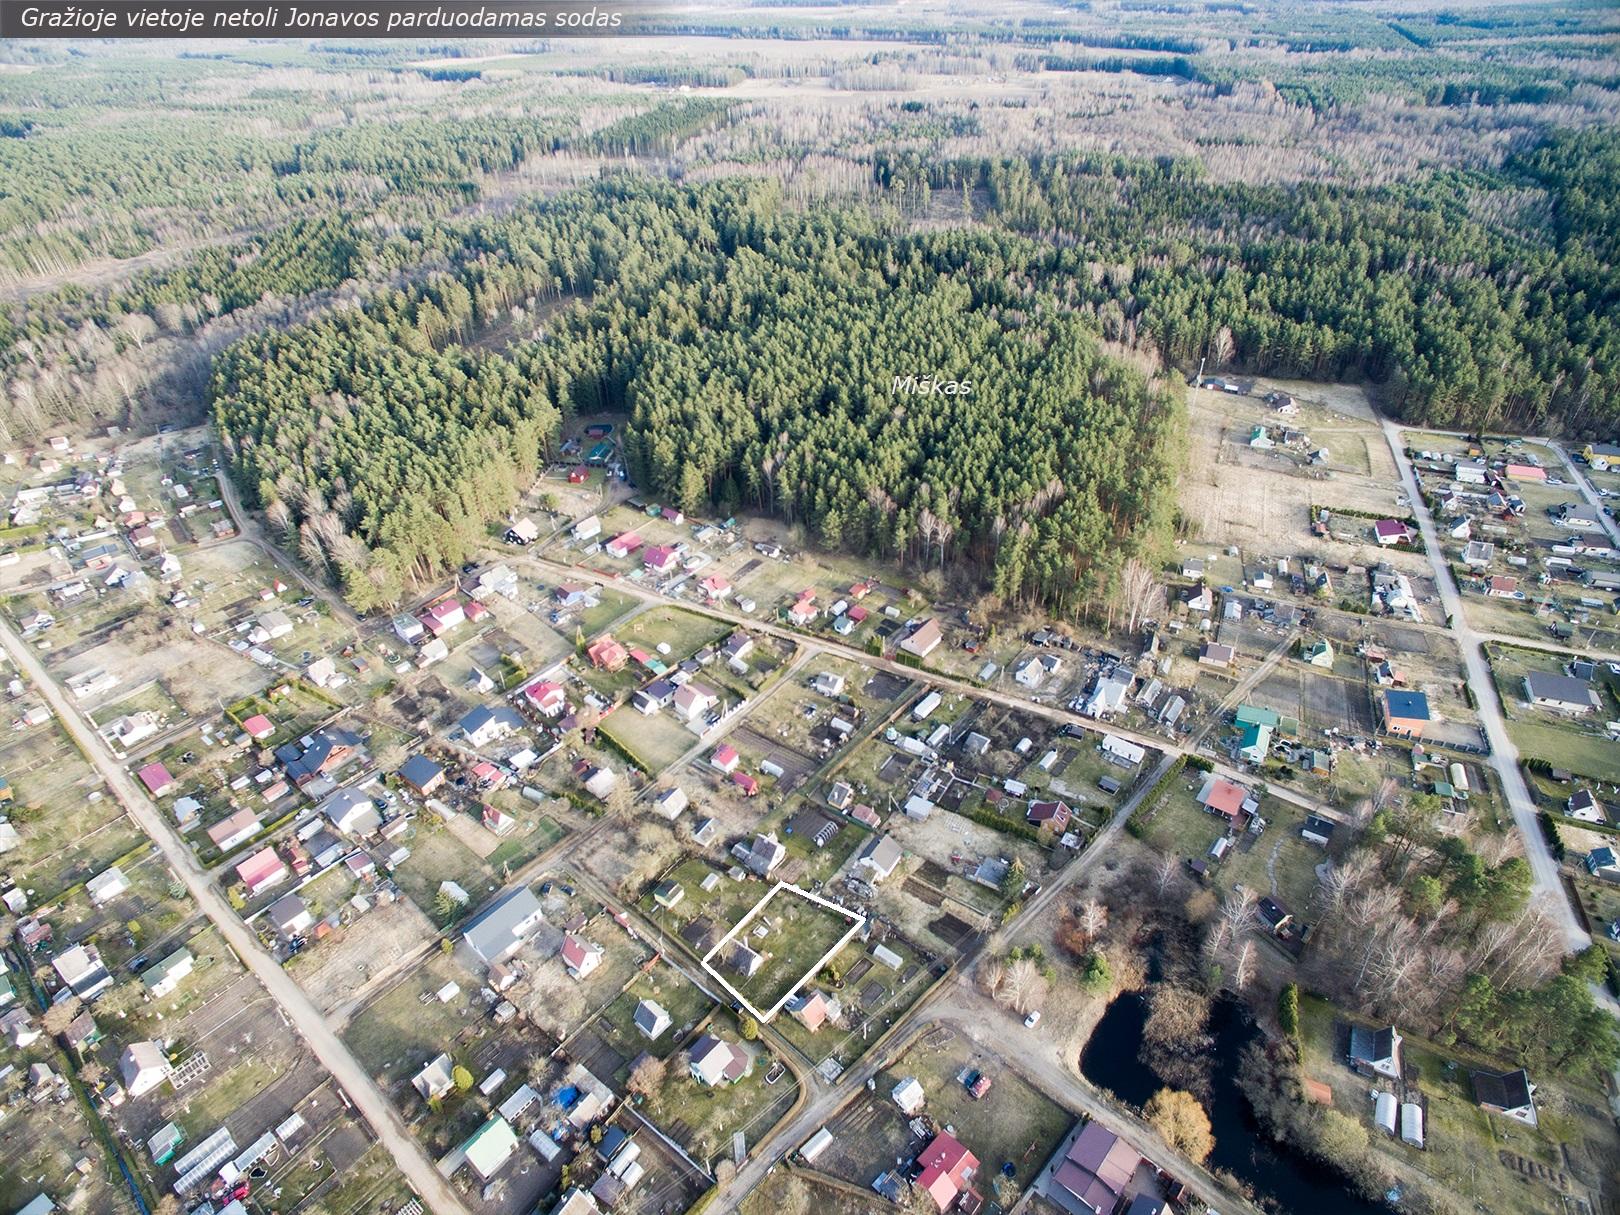 Apsuptyje miškų, netoli Jonavos, Stoškų k., parduodamas sodo sklypas su nameliu.